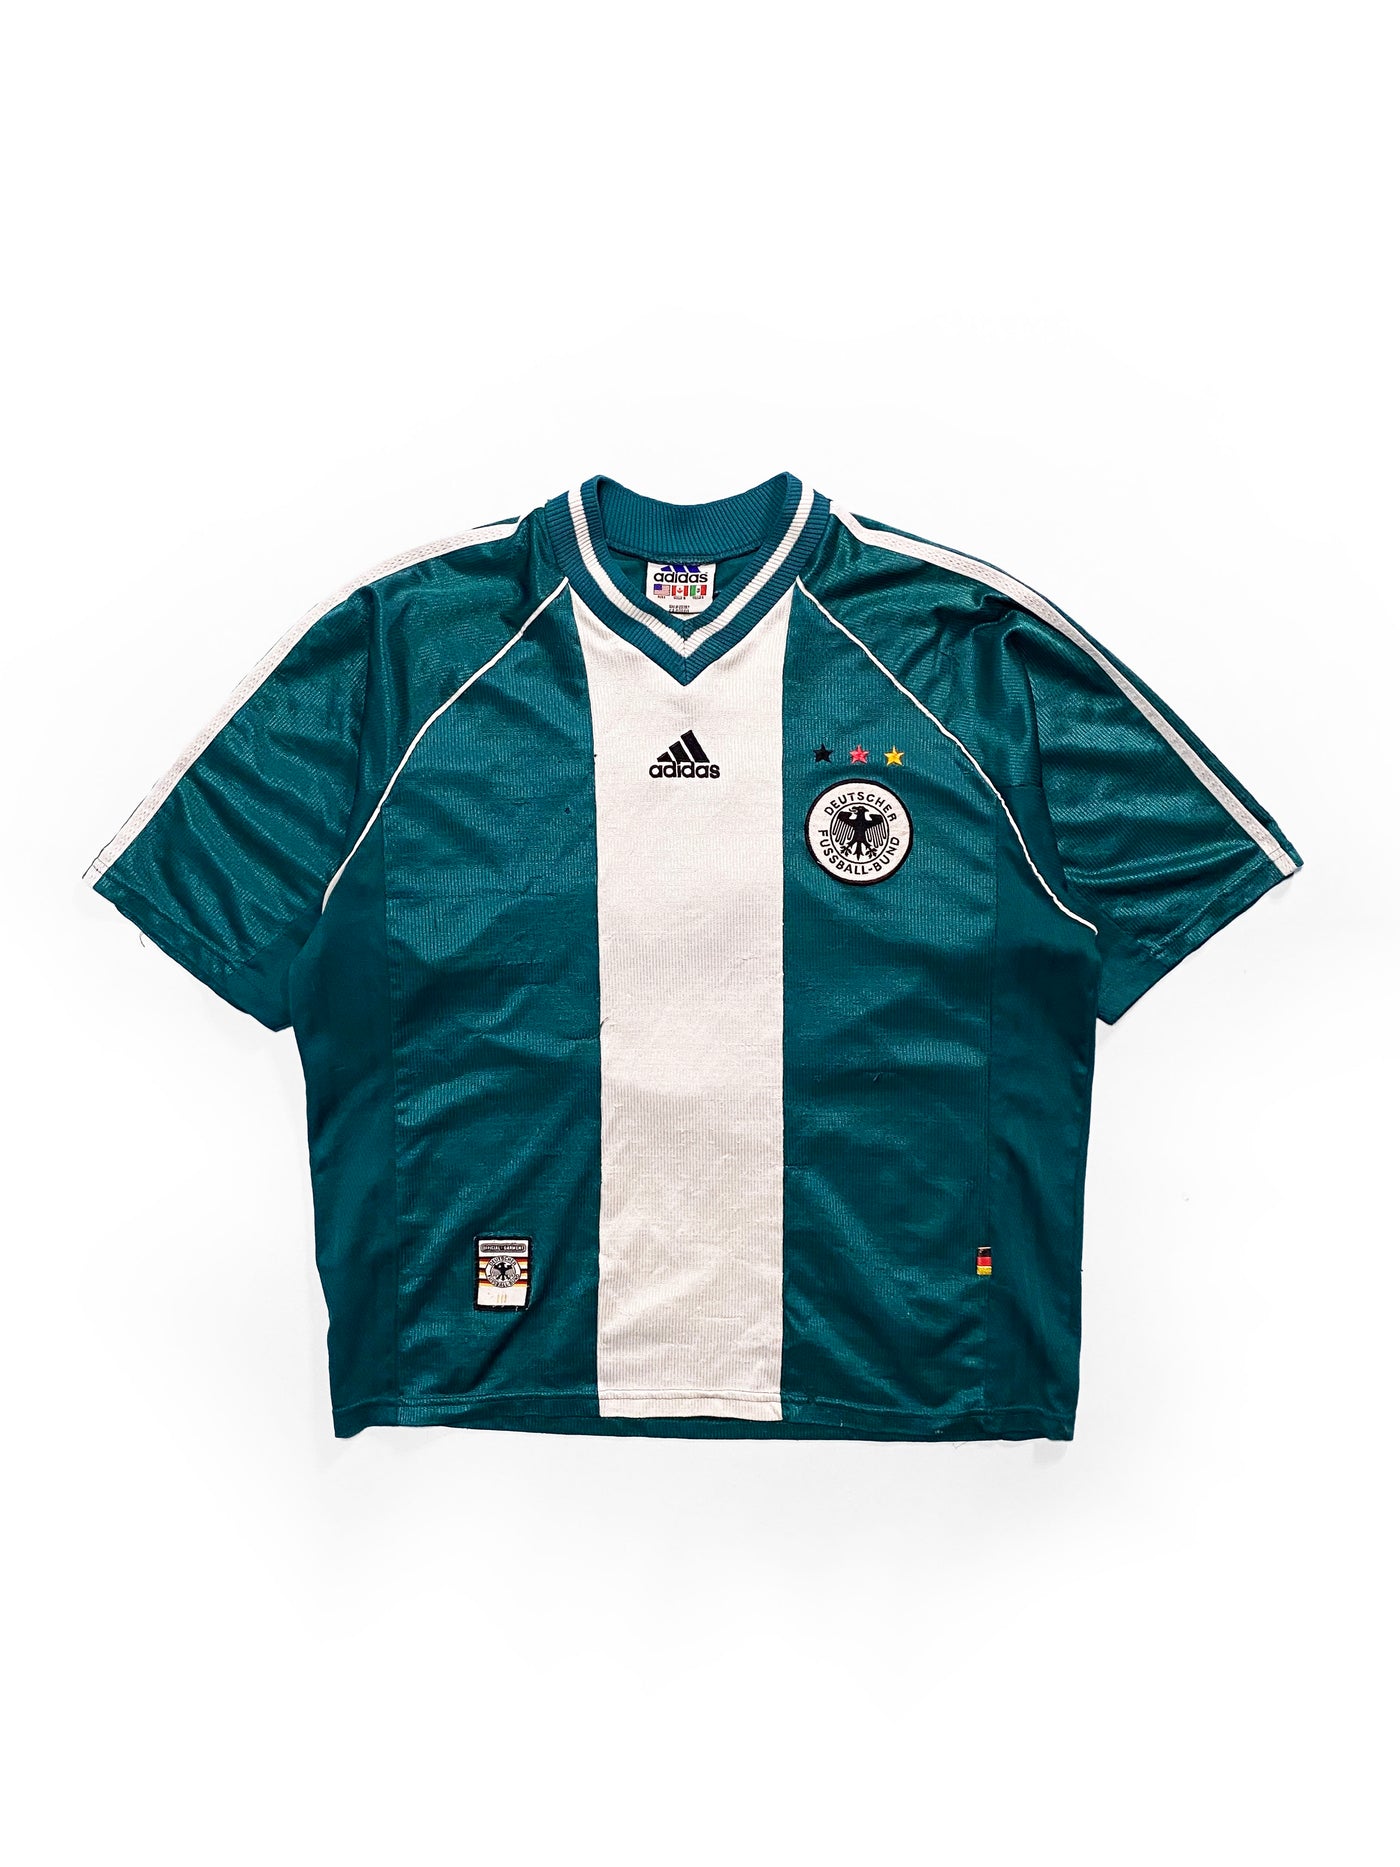 Vintage 90s Germany Soccer Jersey